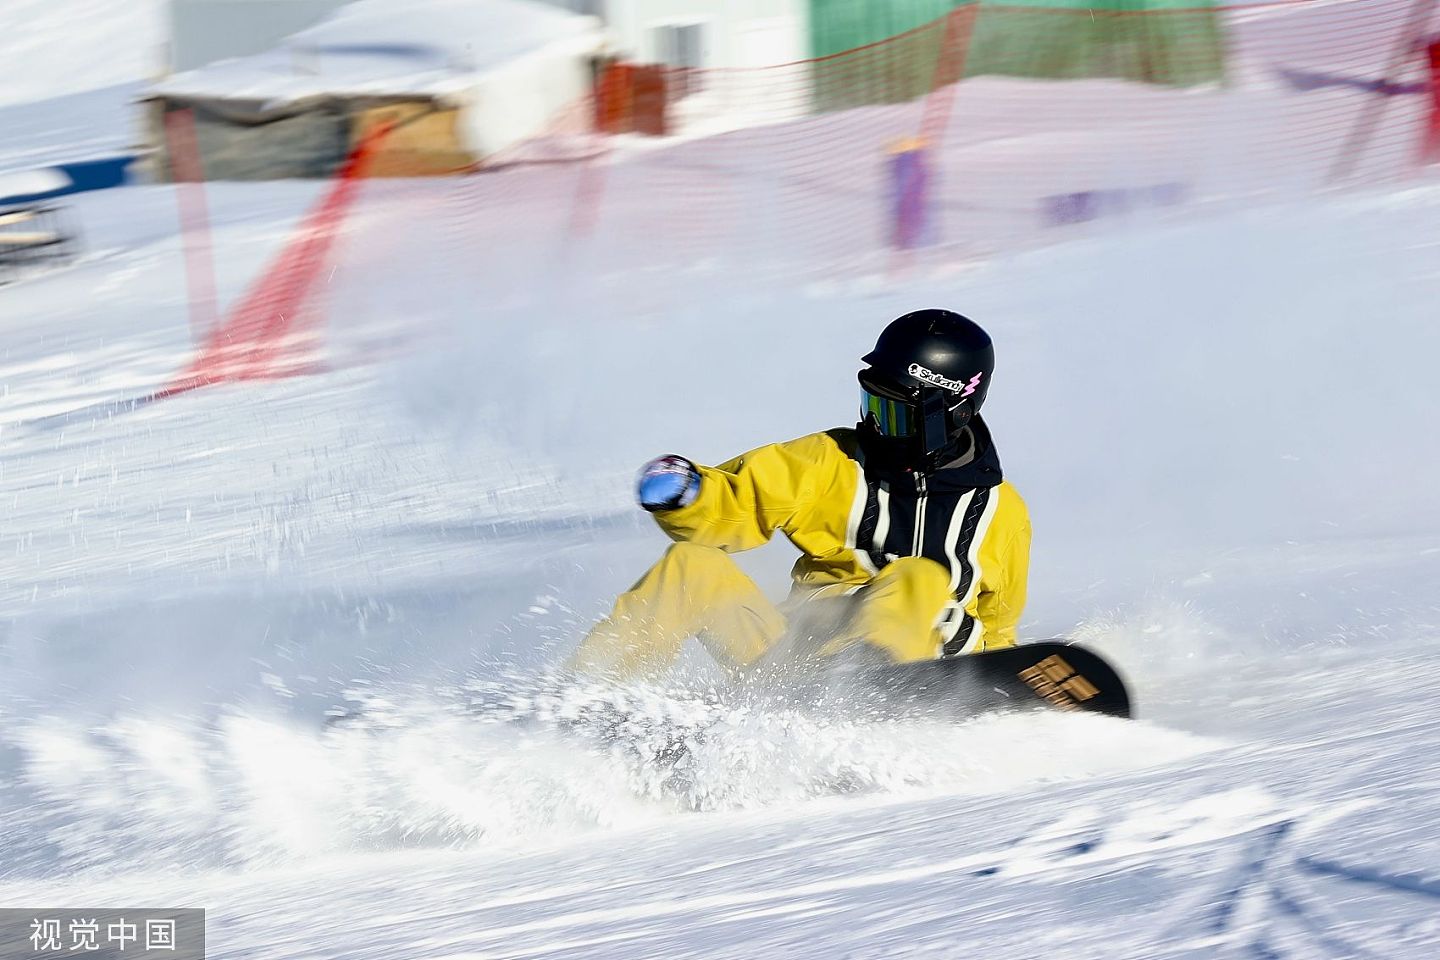 日本滑雪场27岁中国女子硬闯禁滑区！倒插雪堆窒息死亡（图） - 1